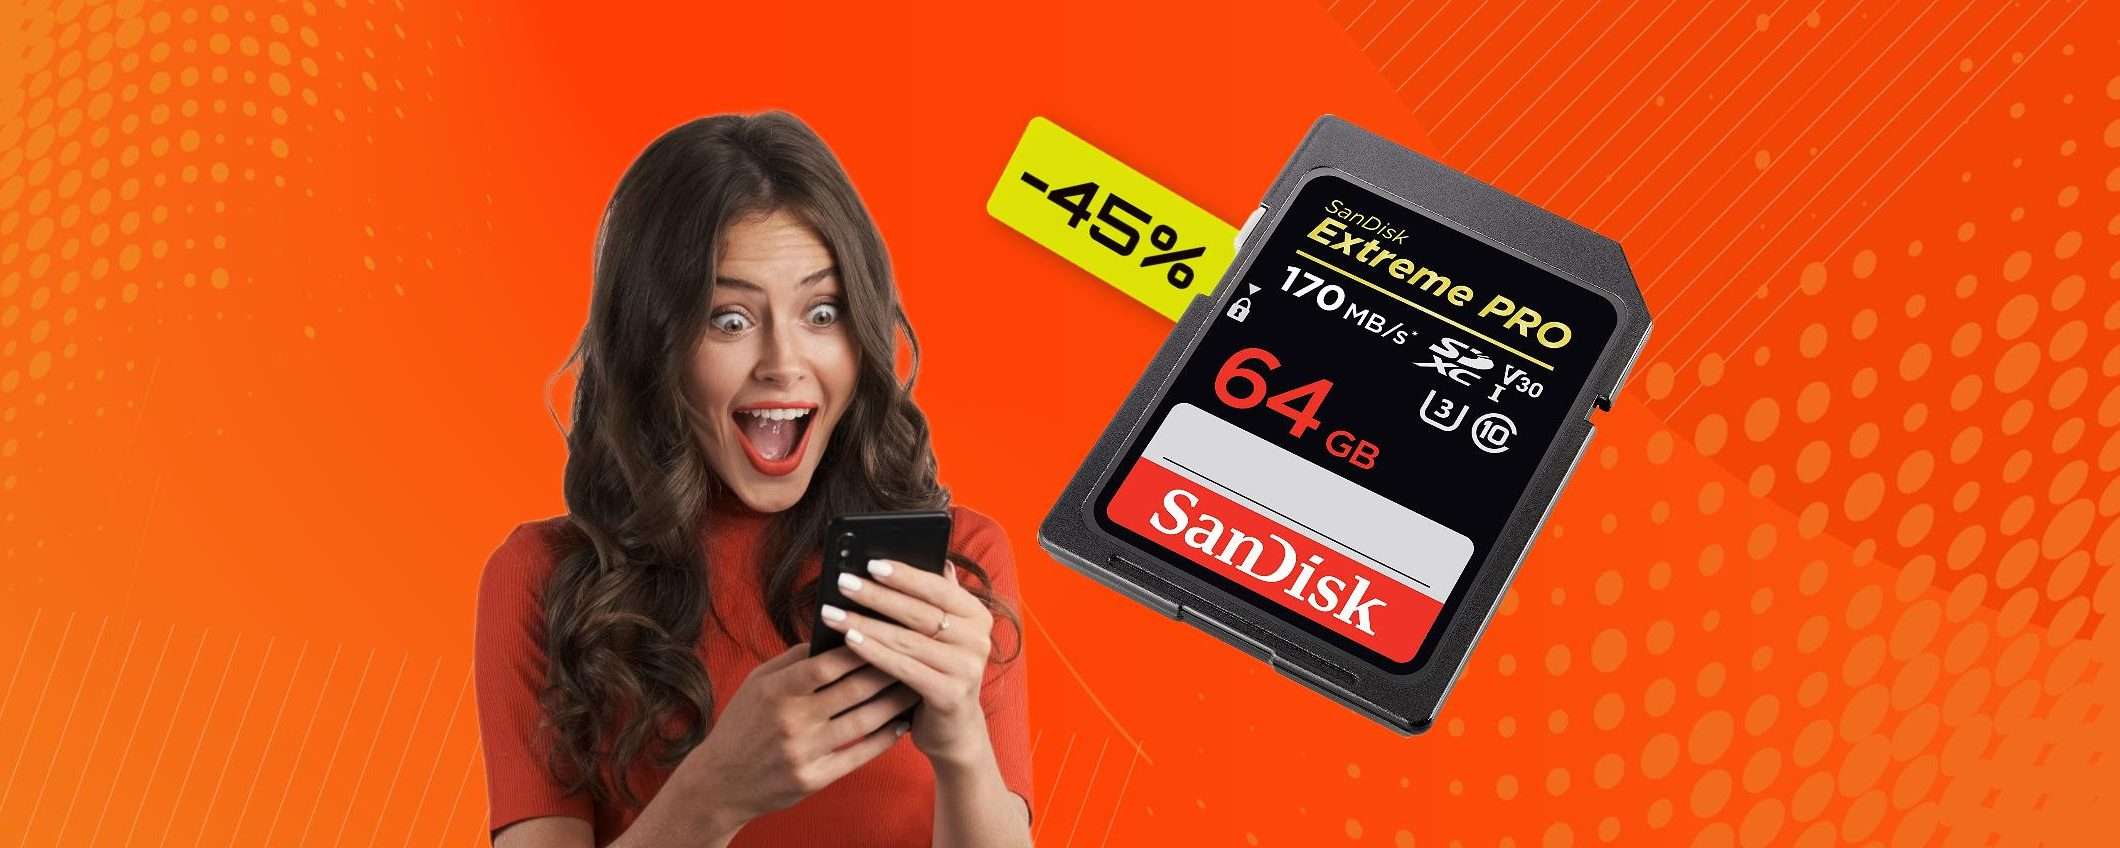 Scheda SD 64GB: spazio e velocità con appena 19€ al Black Friday